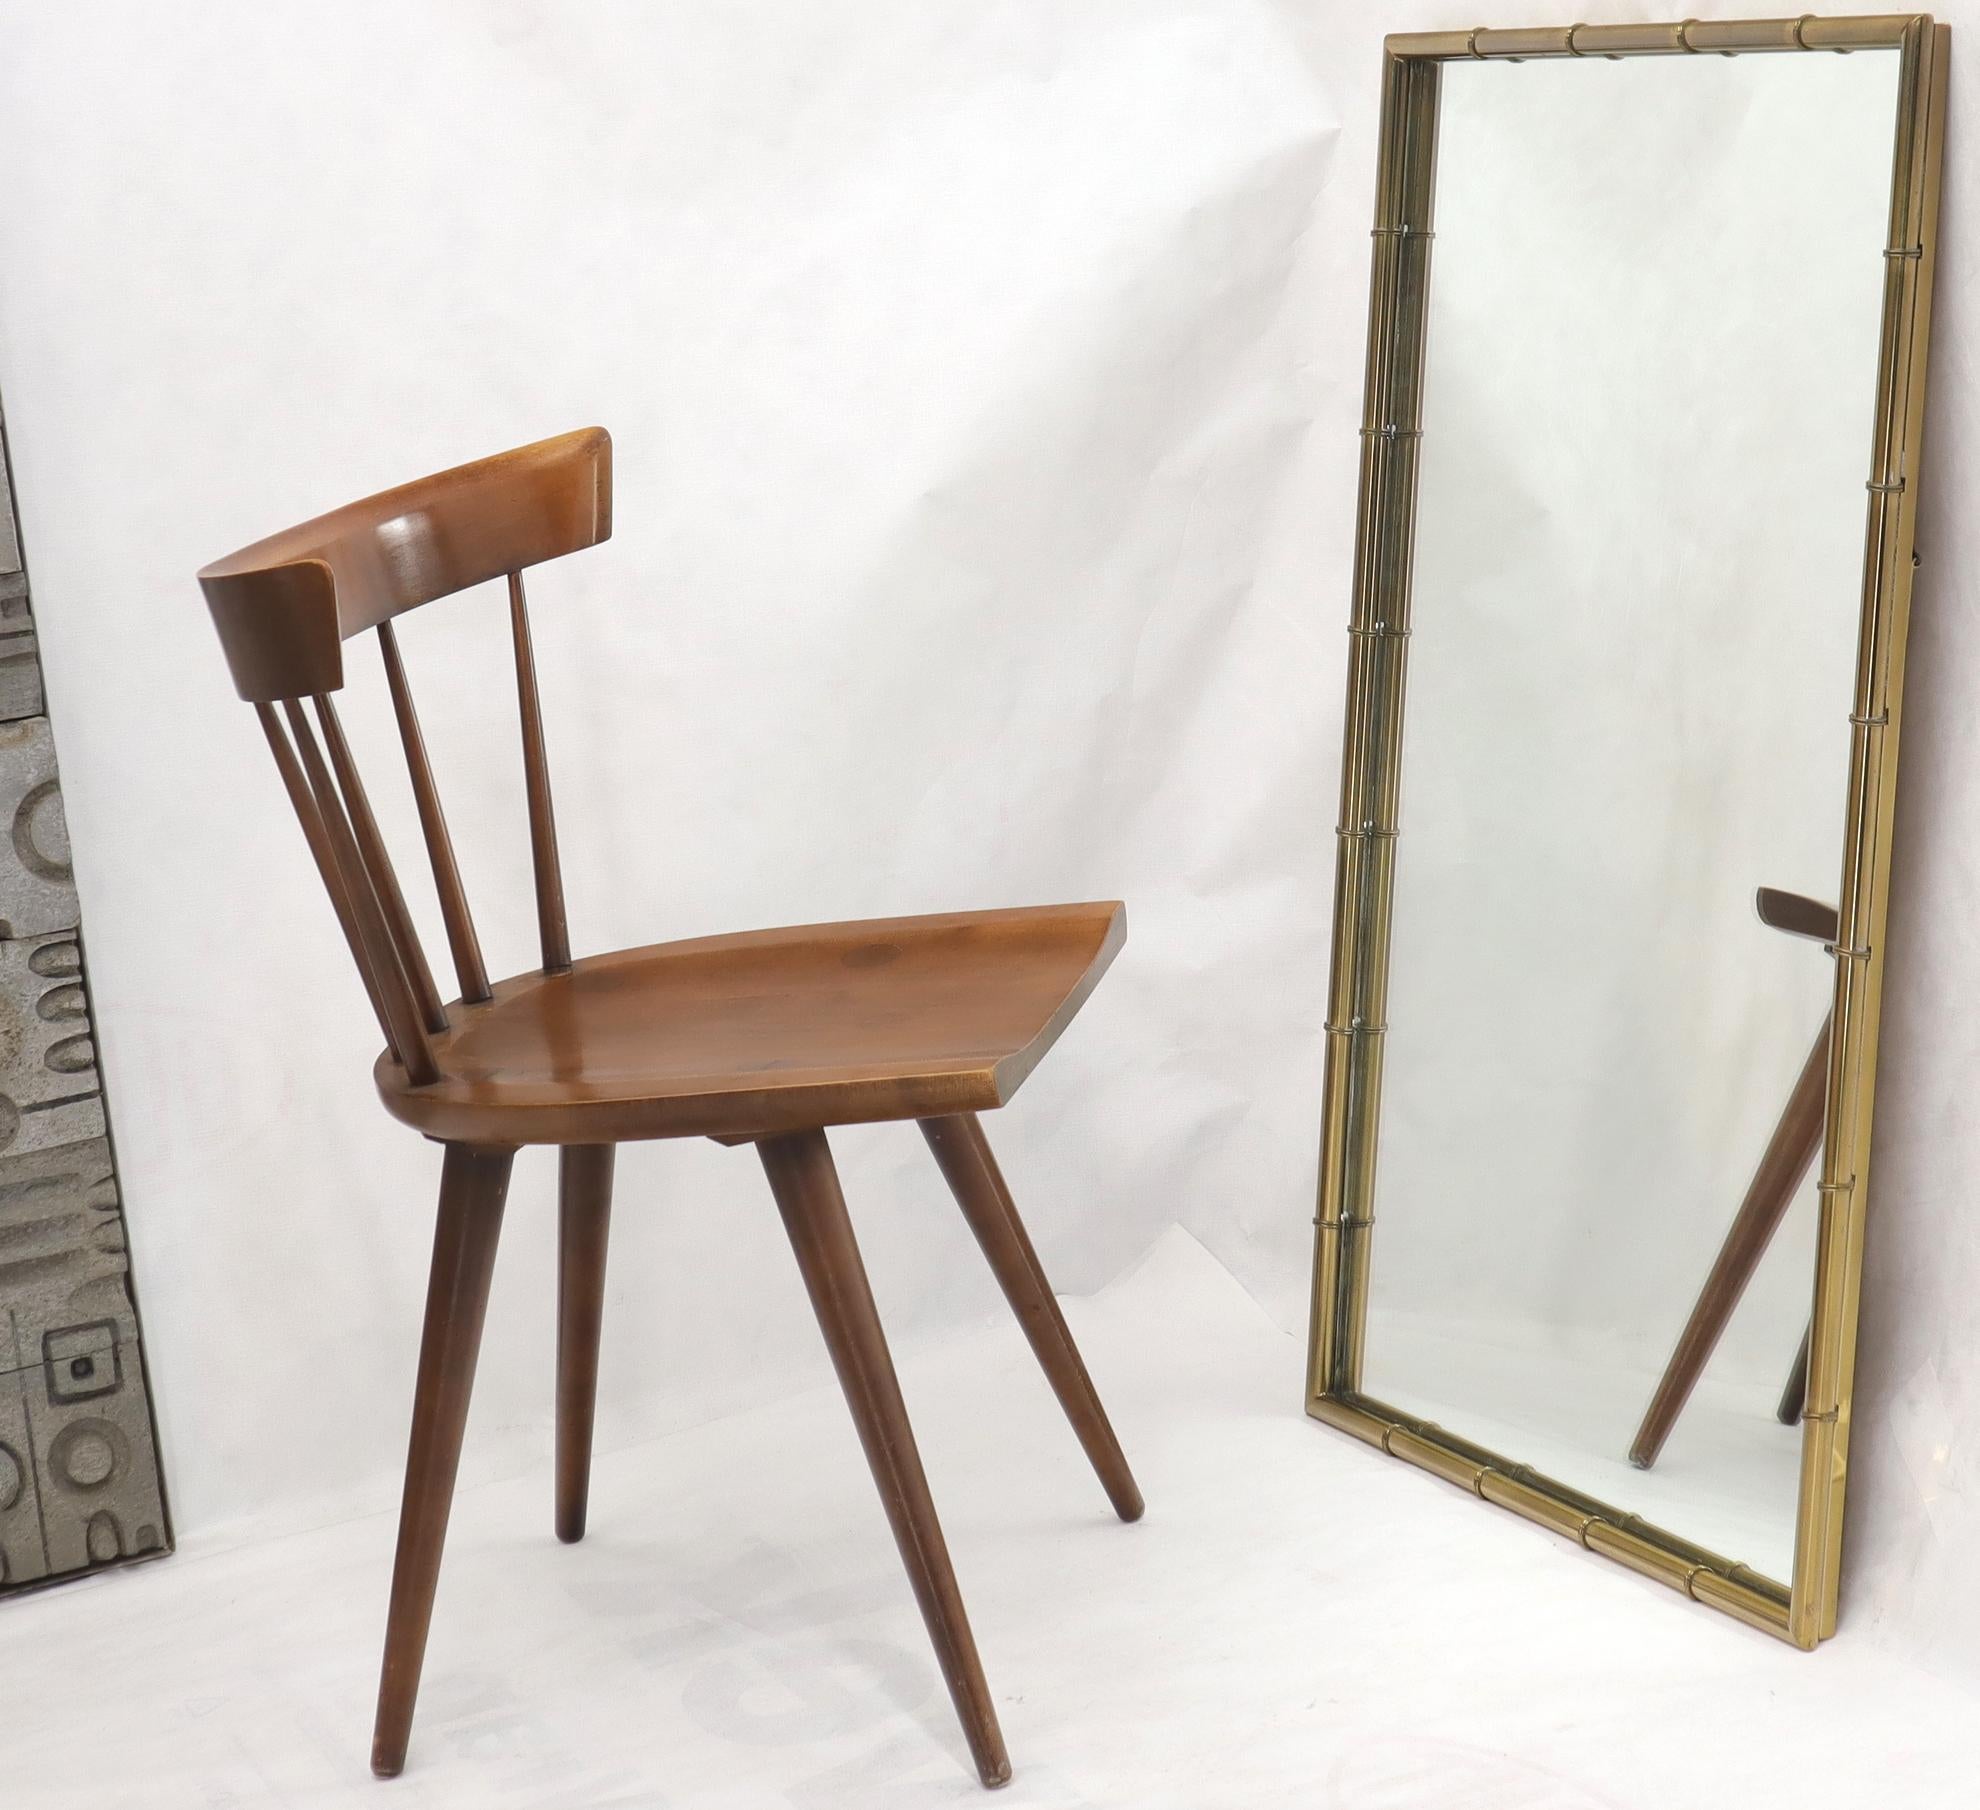 Miroir rectangulaire en bambou, en laiton, de style moderne du milieu du siècle. Attribué à Mastercraft. Une qualité étonnante et un artisanat d'atelier.